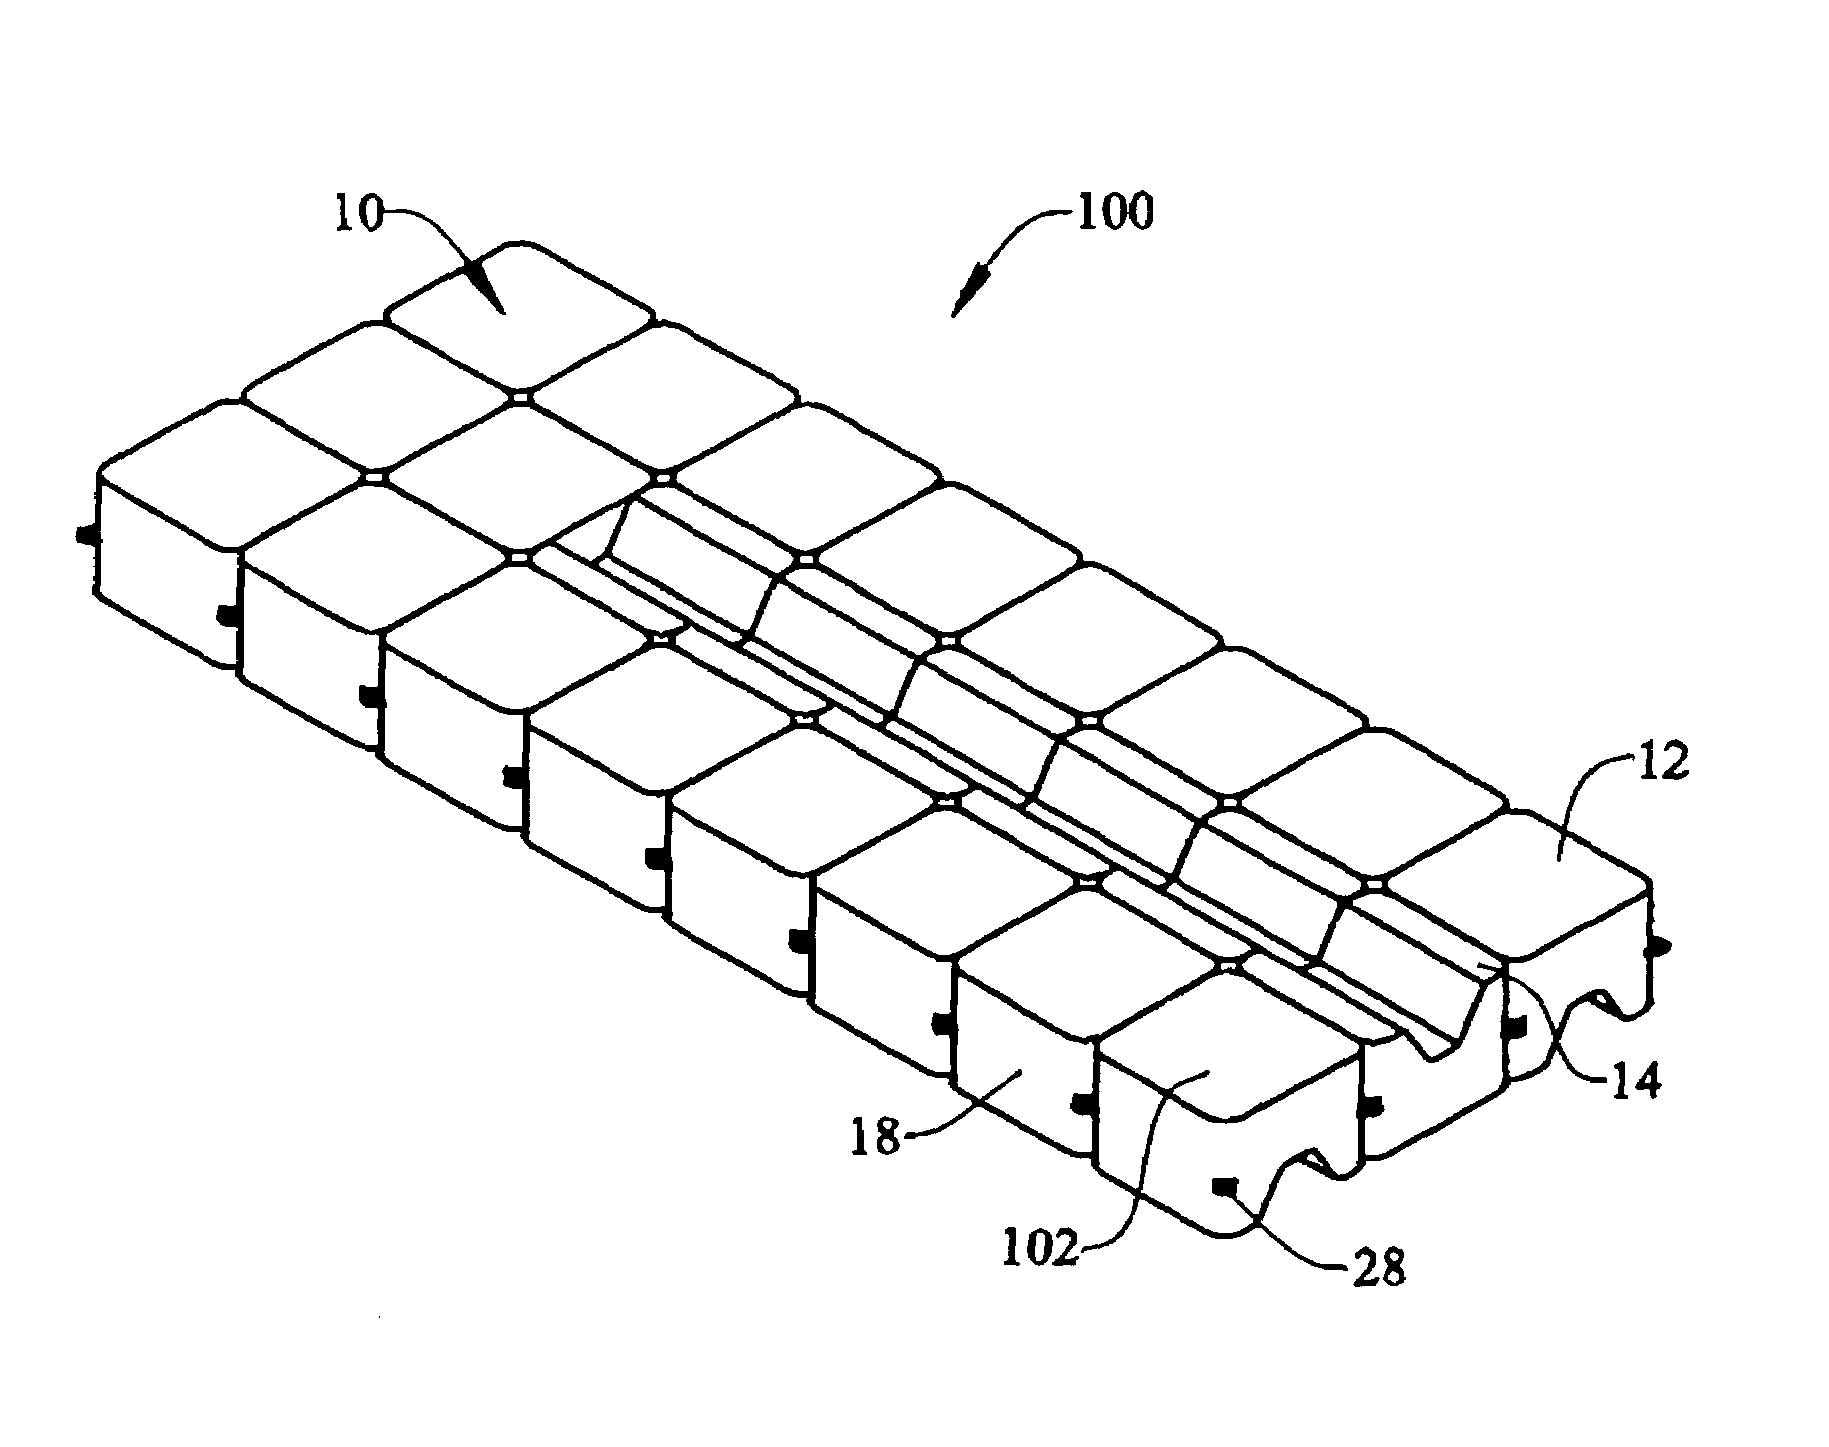 Multidirectional floating dock element